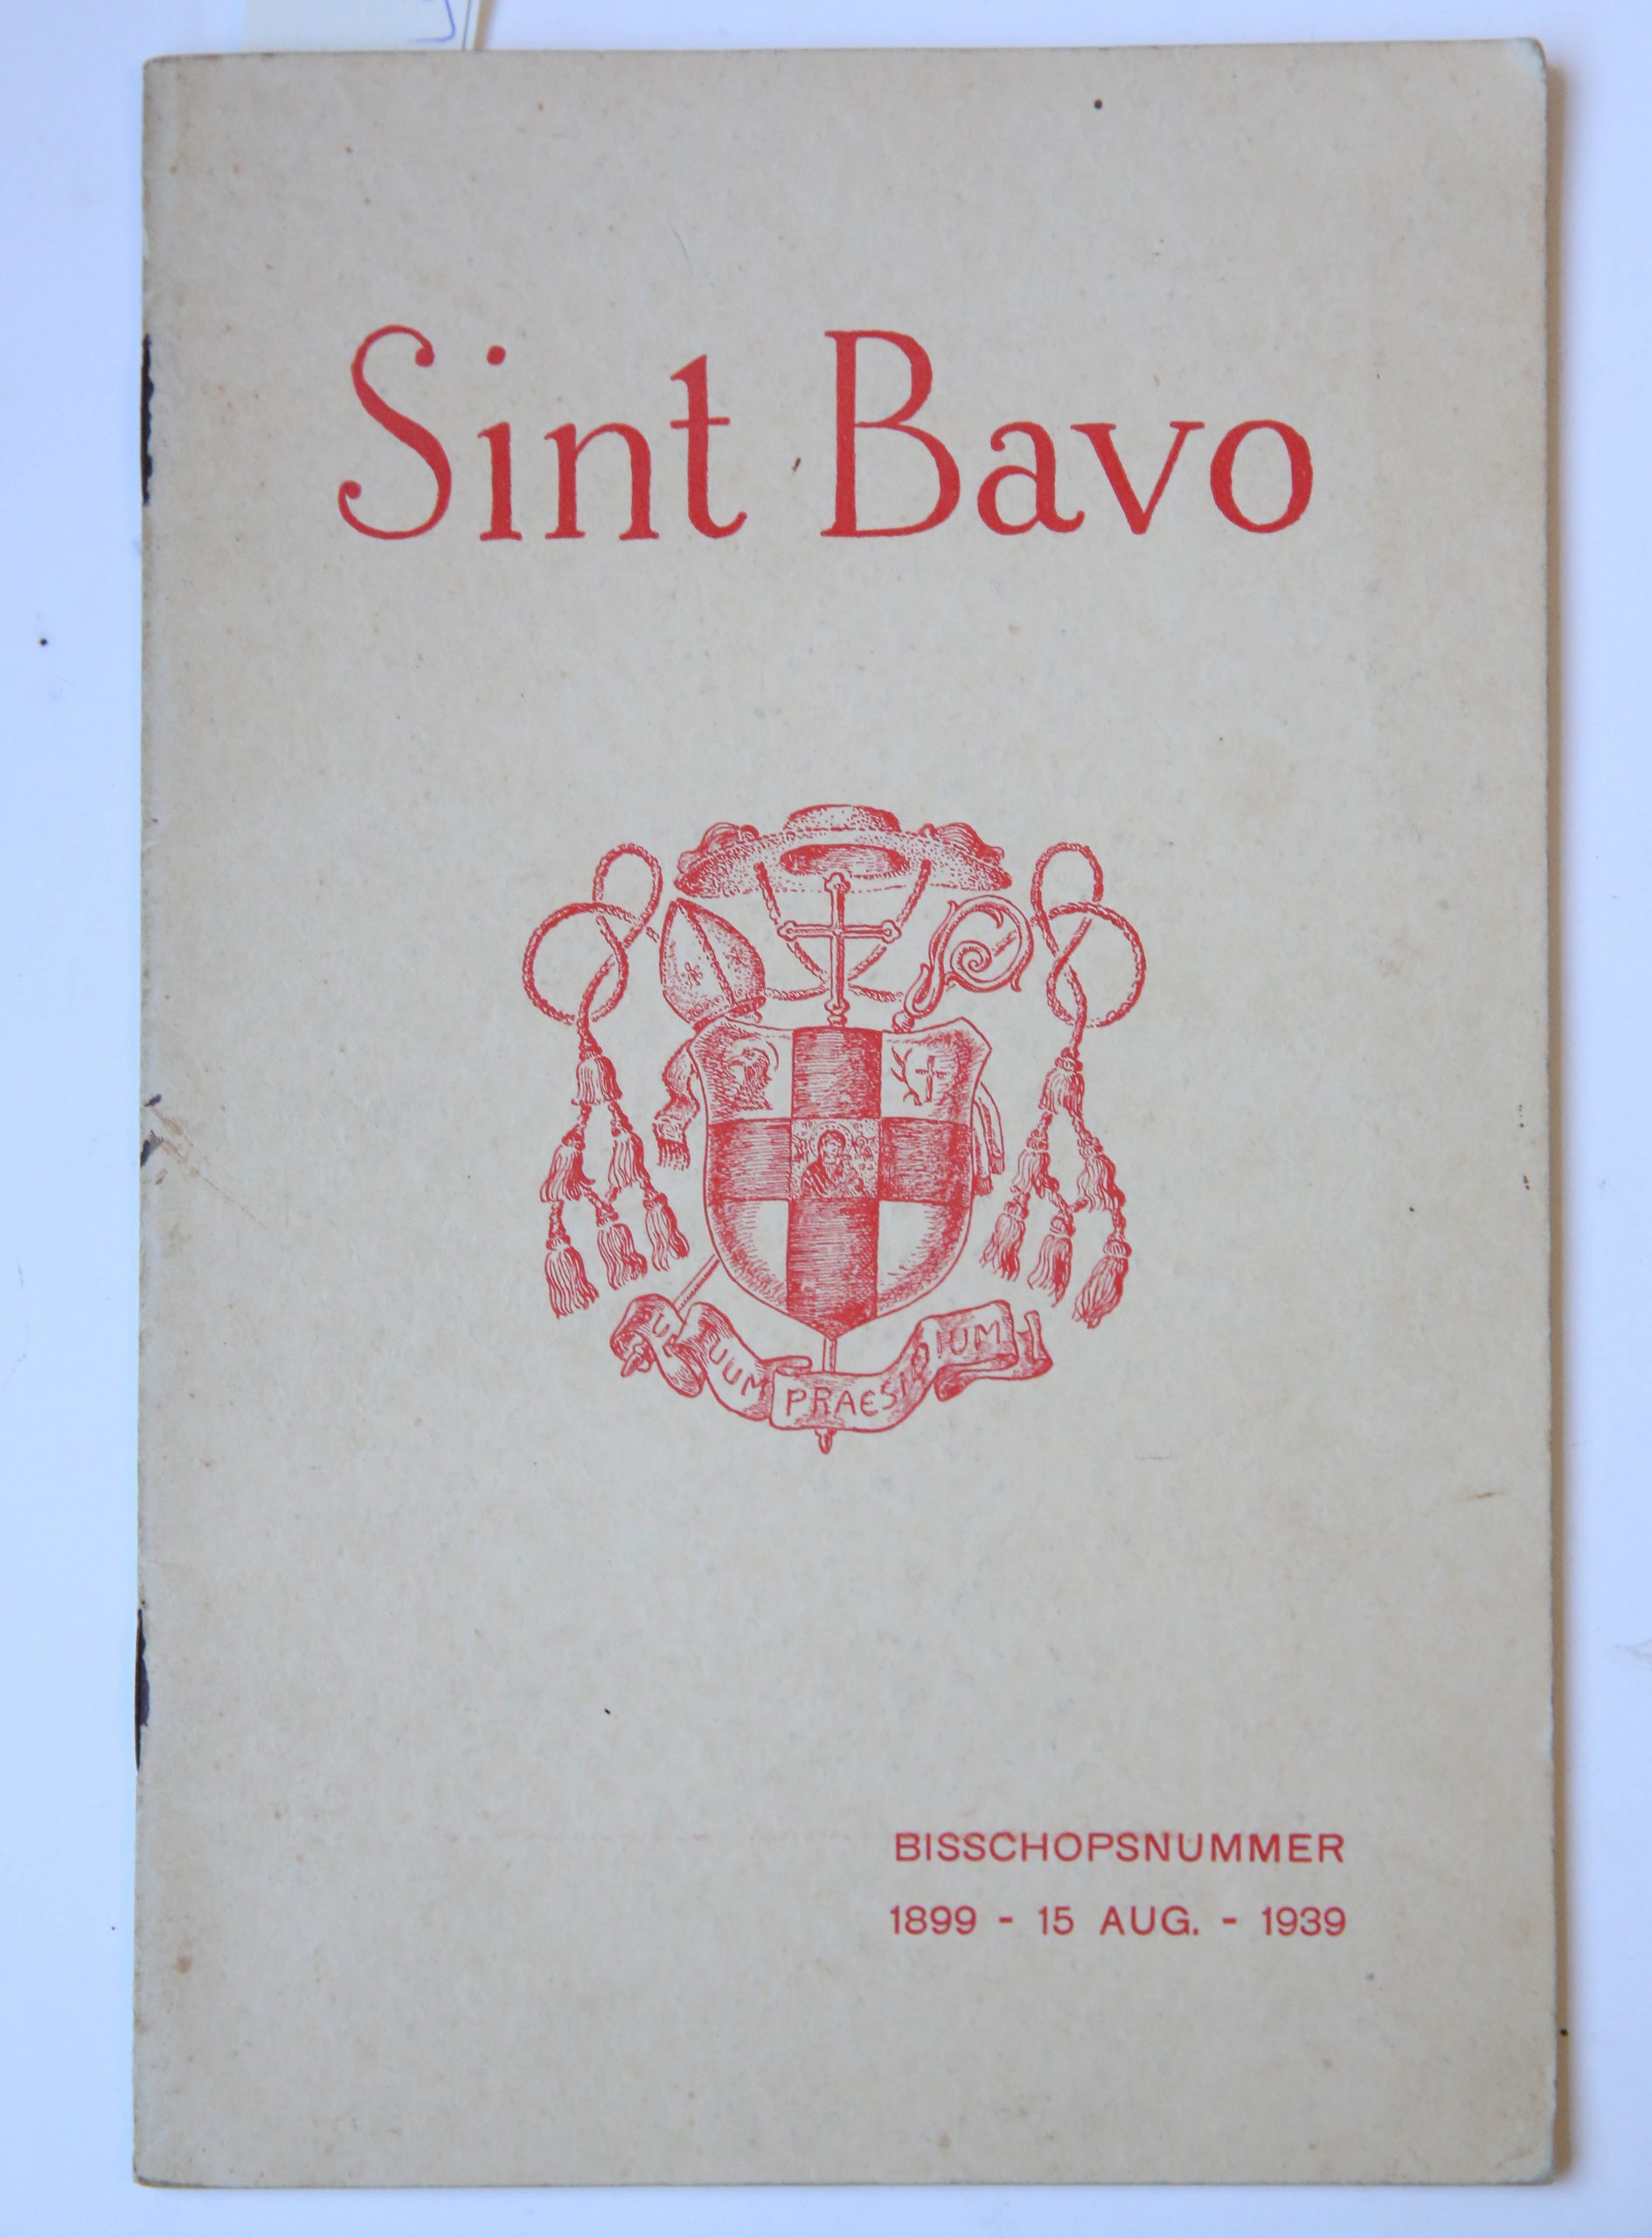 Sint Bavo : bisschopsnummer 1899 - 15 aug. - 1939 / [met bijdragen van H.J.M. Taskin en W. Nolet], 1939, Haarlem [s.n.], 1939, 32 pp. Illustrated.